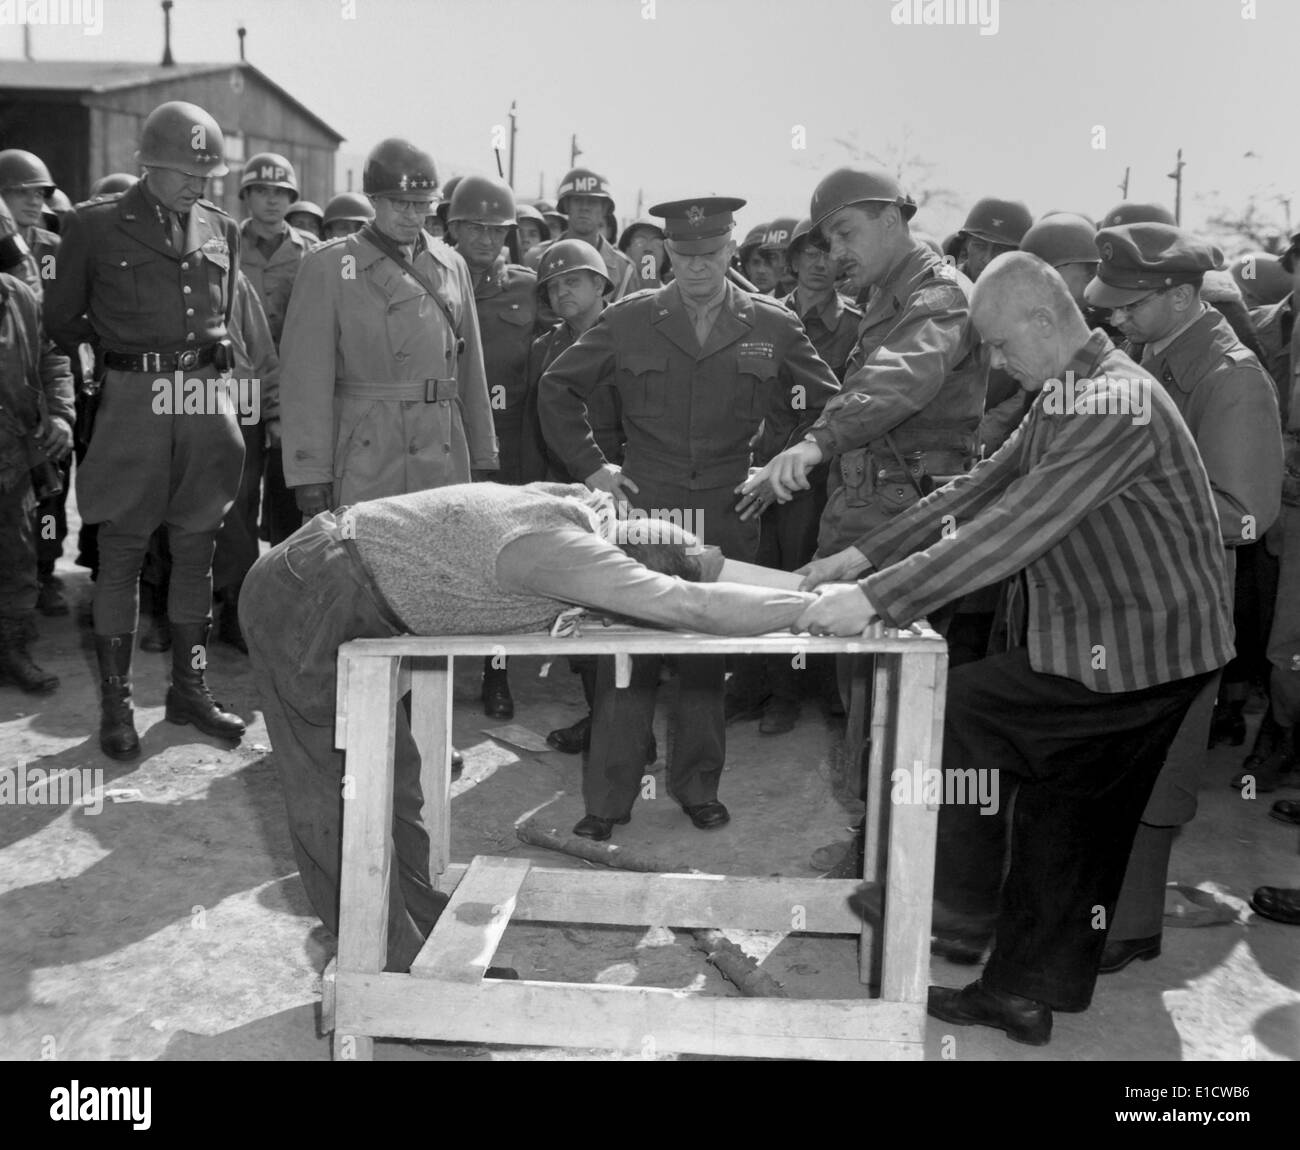 Insassen des Konzentrationslagers Ohrdruf unter Beweis stellen, wie sie gefoltert wurden. Beobachten sind Generäle Eisenhower, Bradley, und Stockfoto